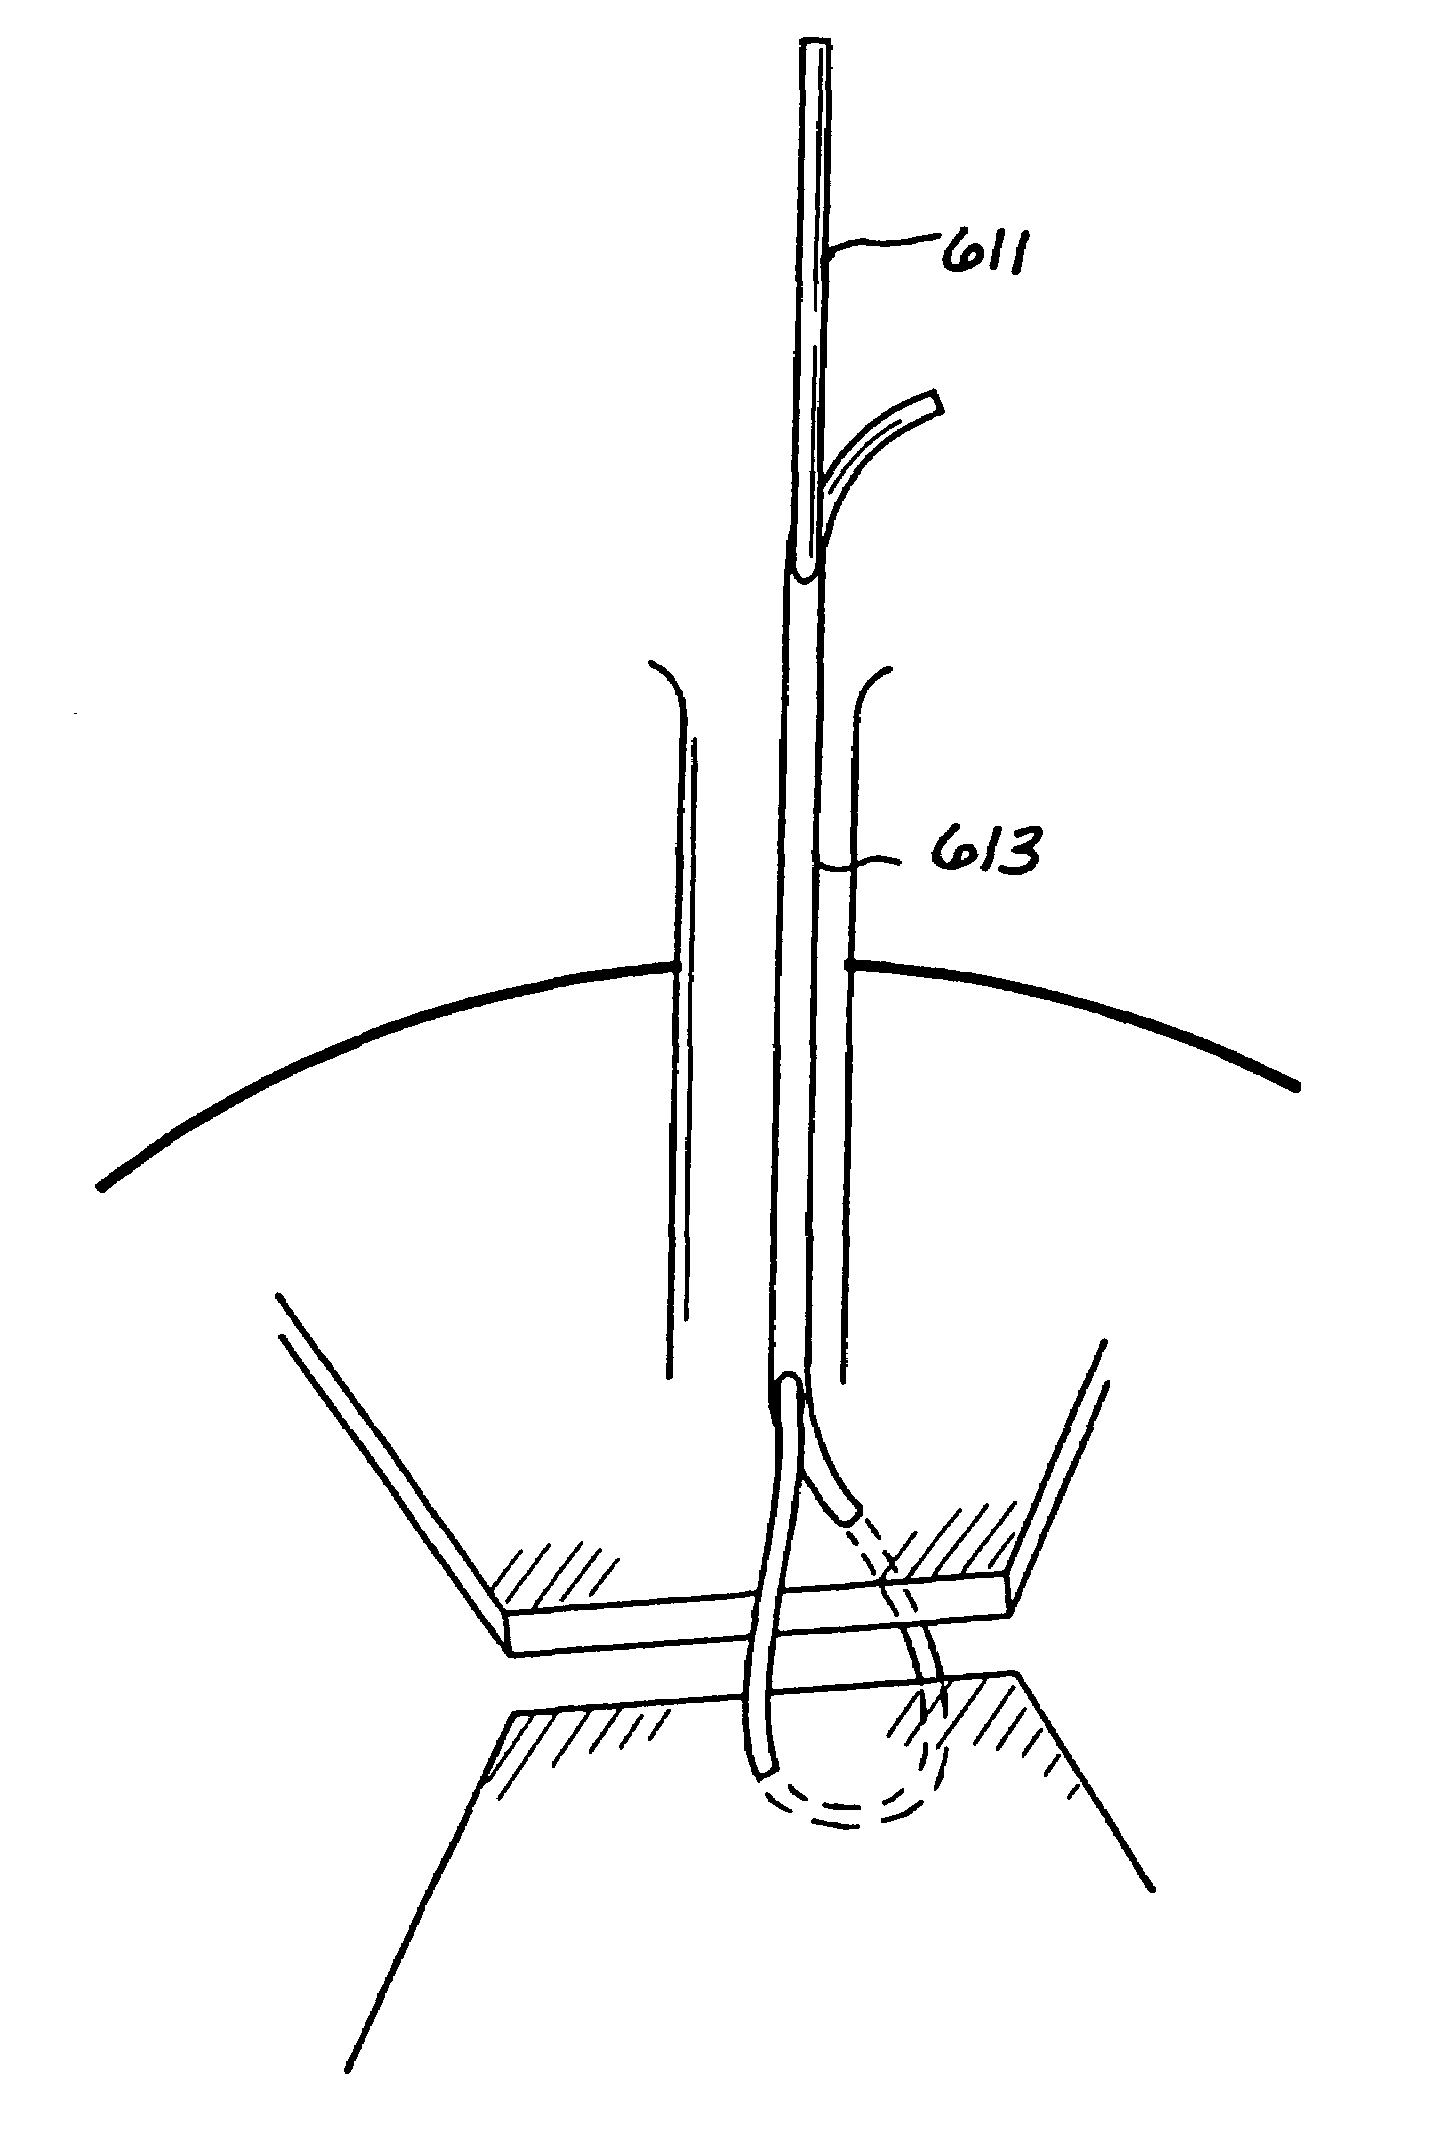 Single-tailed suturing method